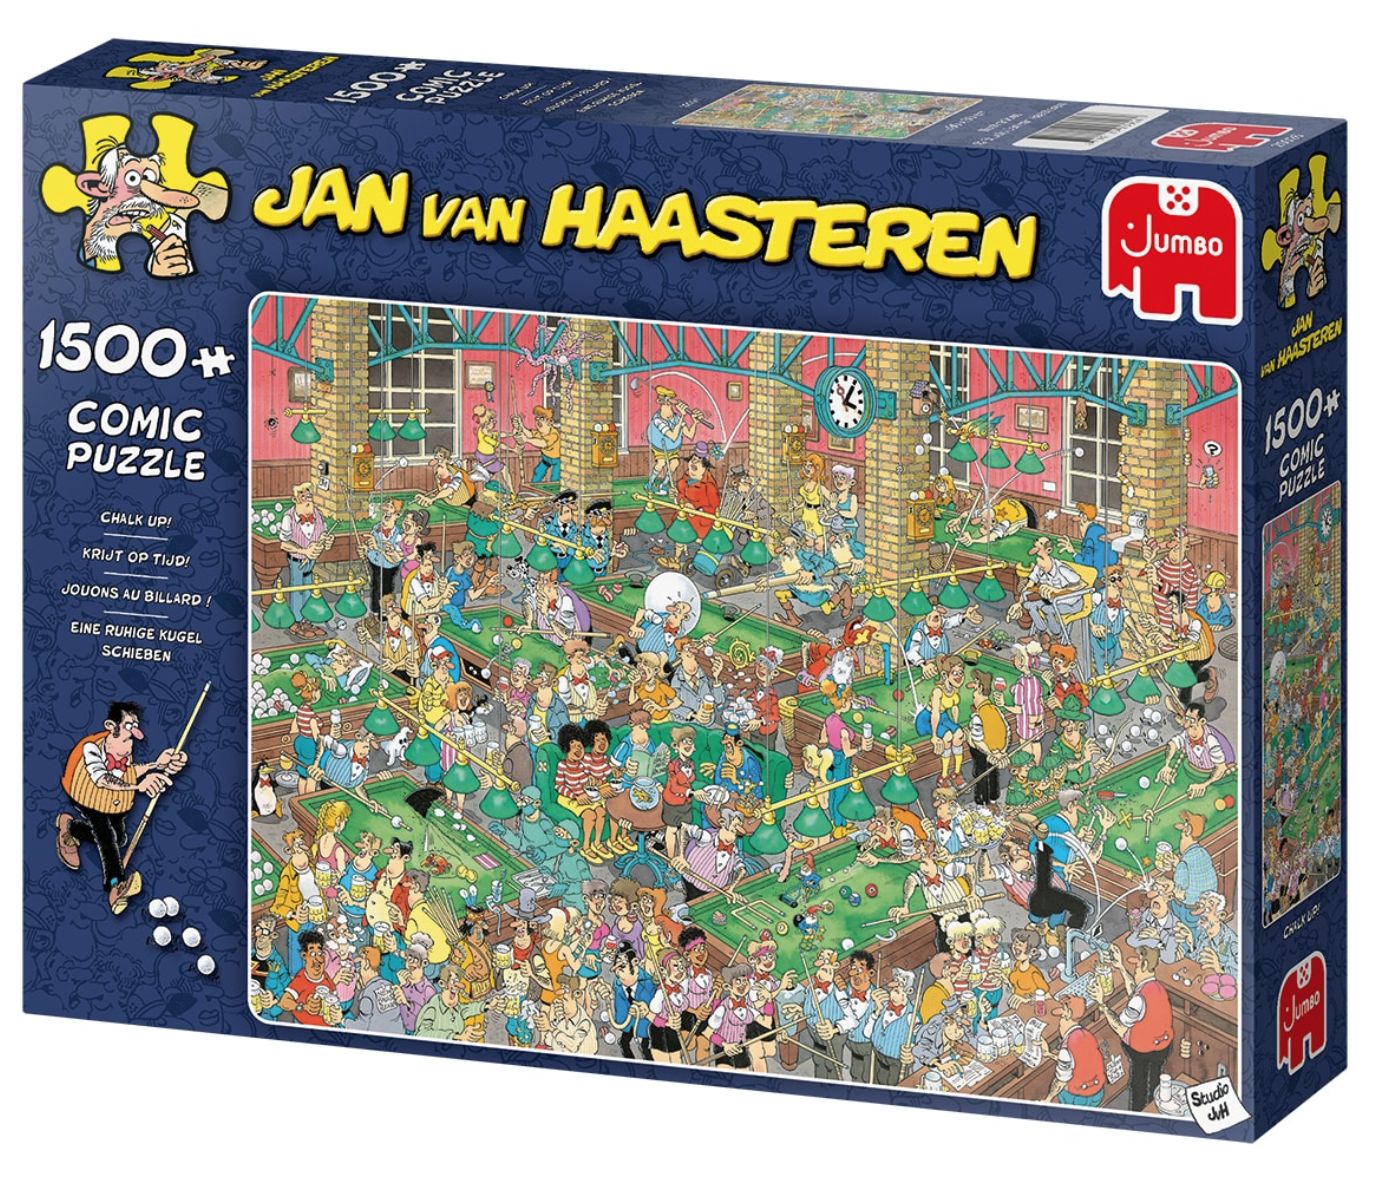 ik heb nodig Samenwerking Kikker Jan van Haasteren puzzels ' voordelig kopen? Brede keuze! - Puzzels123